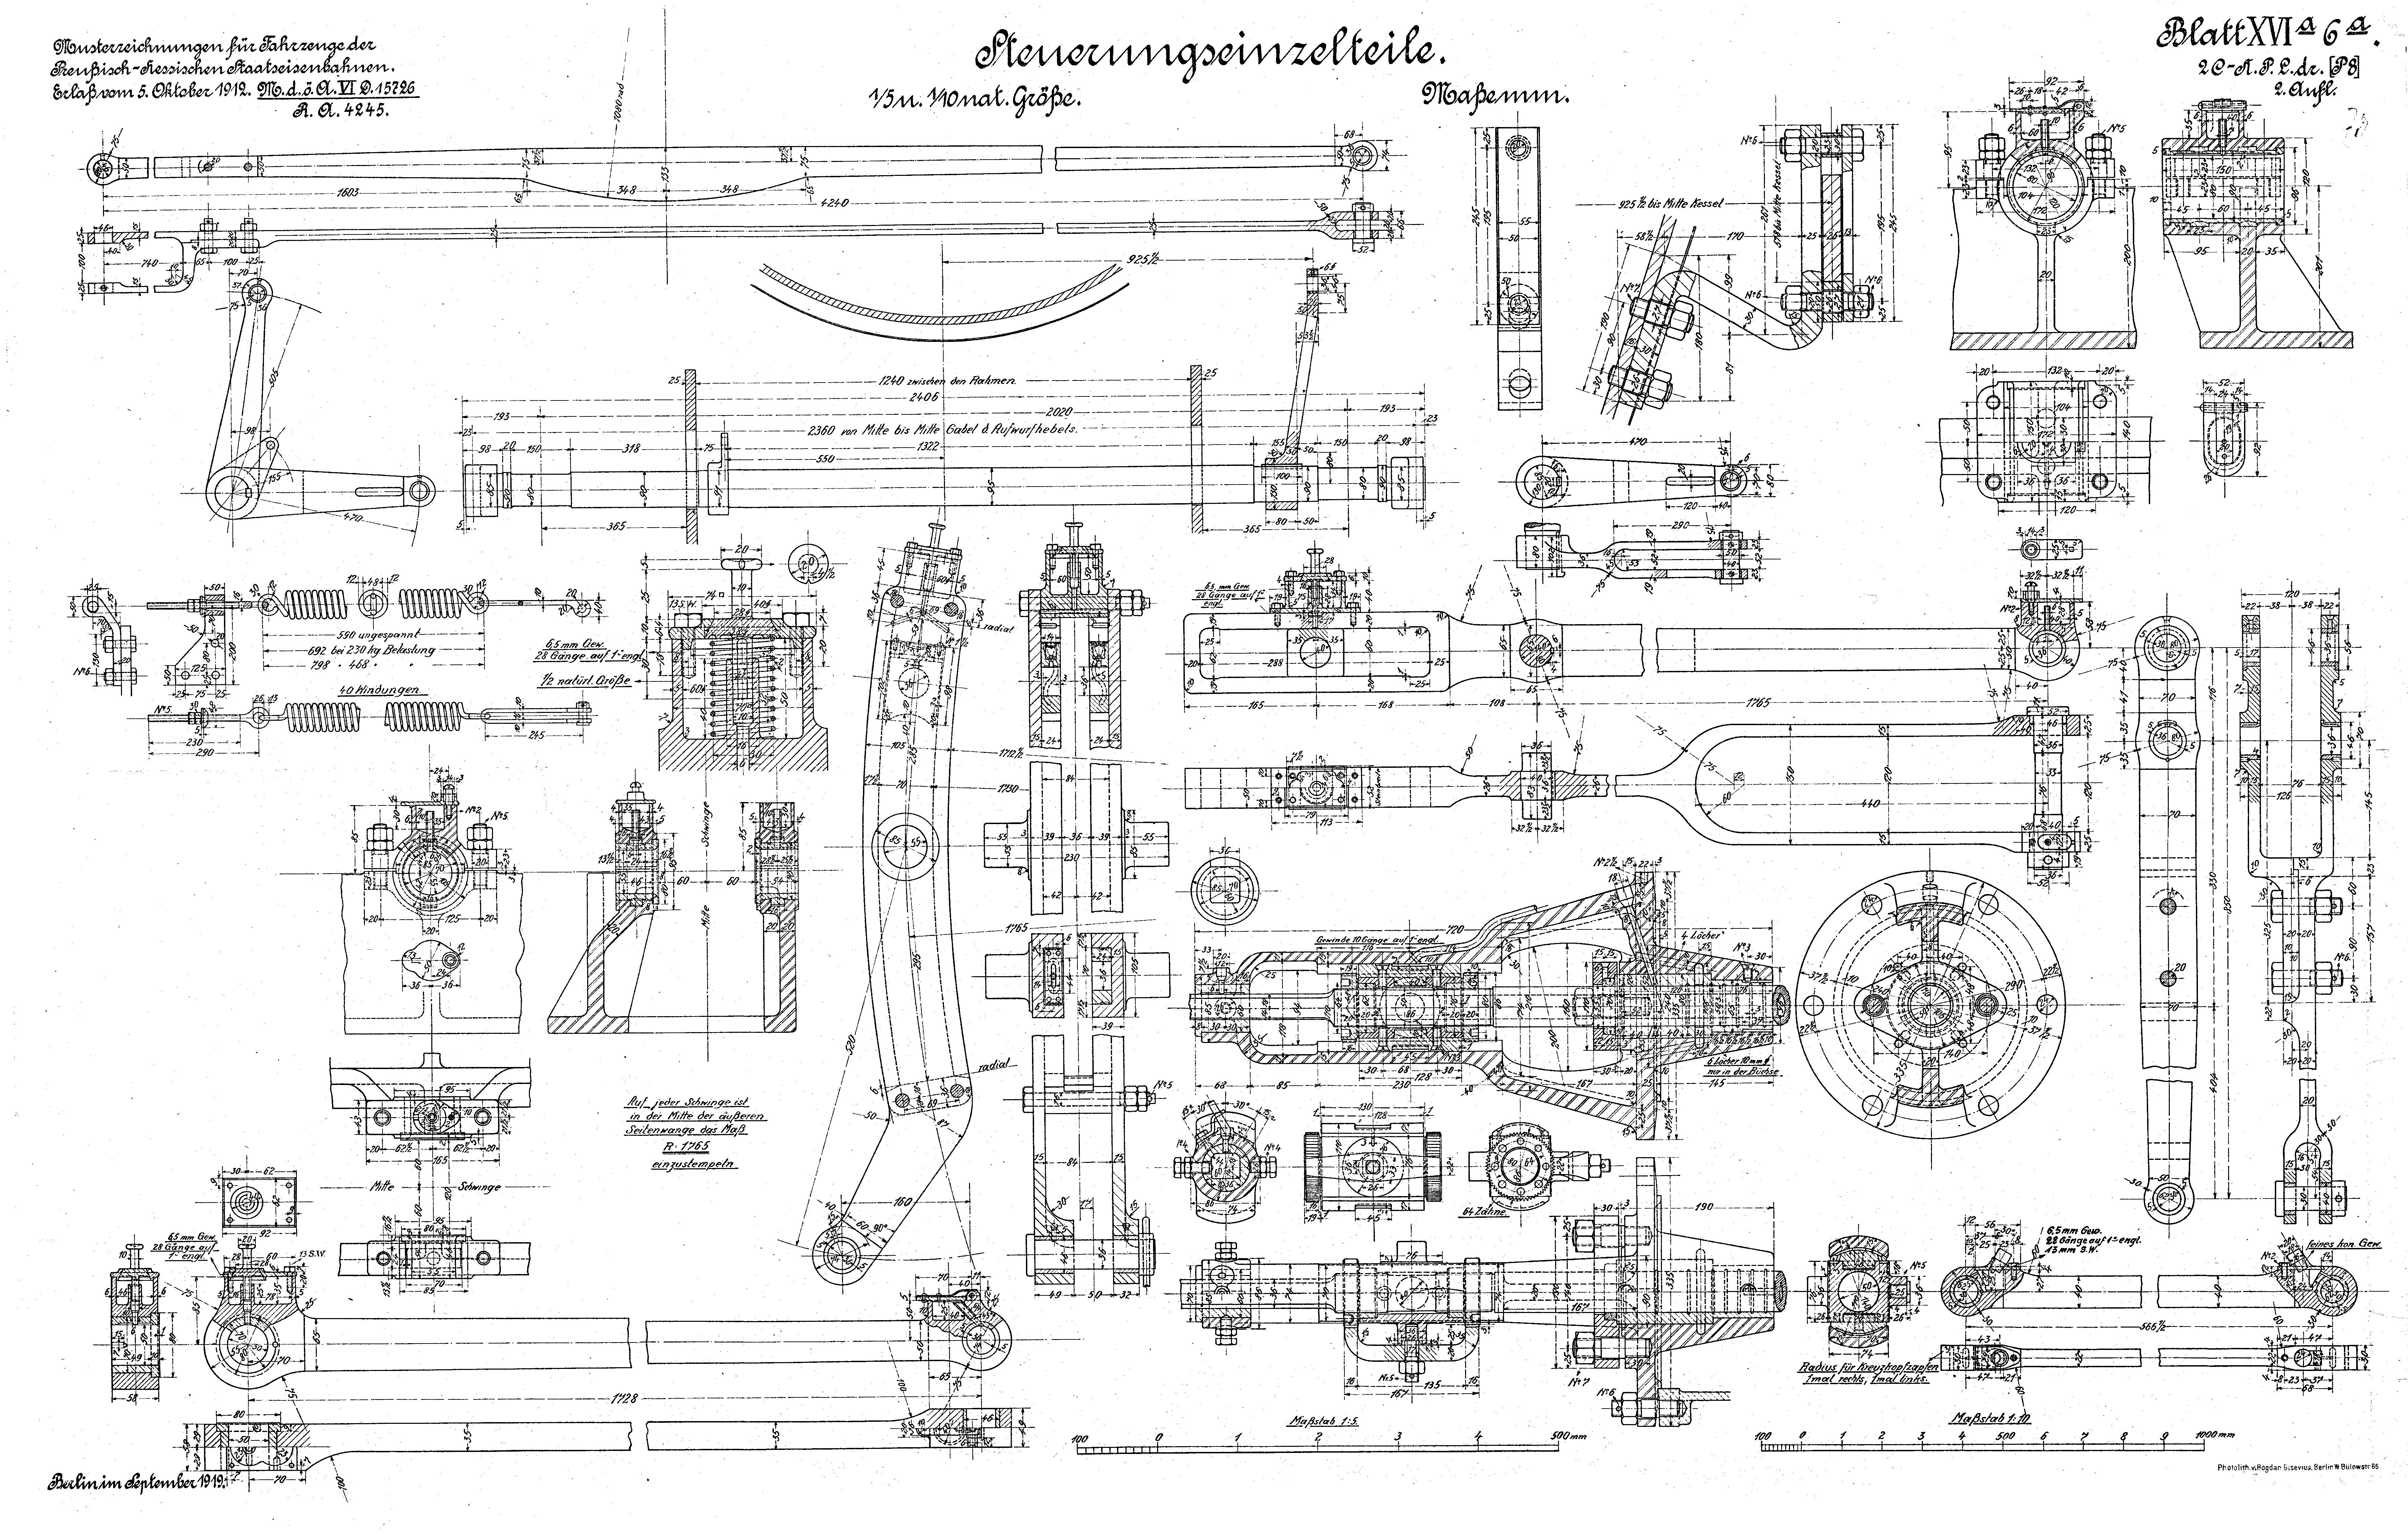 Konstruktionszeichnung Dampflokomotive Gattung P 8 der Preußischen Staatseisenbahnen, Detailzeichnung Steuerungsteile 1919 (Verkehrsmuseum Dresden CC BY-NC-SA)